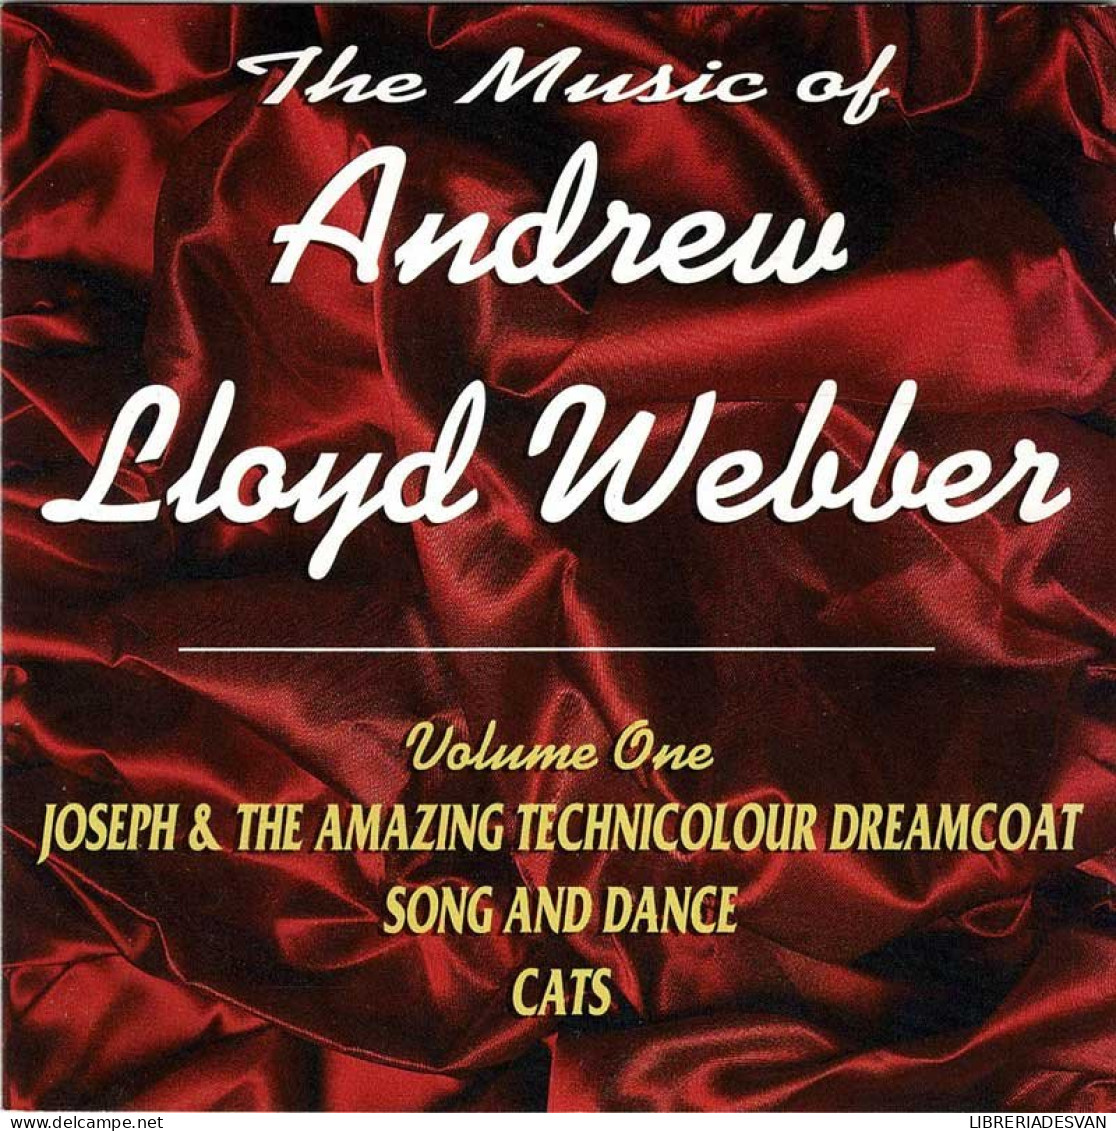 Andrew Lloyd Webber - The Music Of Andrew Lloyd Webber Volume One. CD - Soundtracks, Film Music